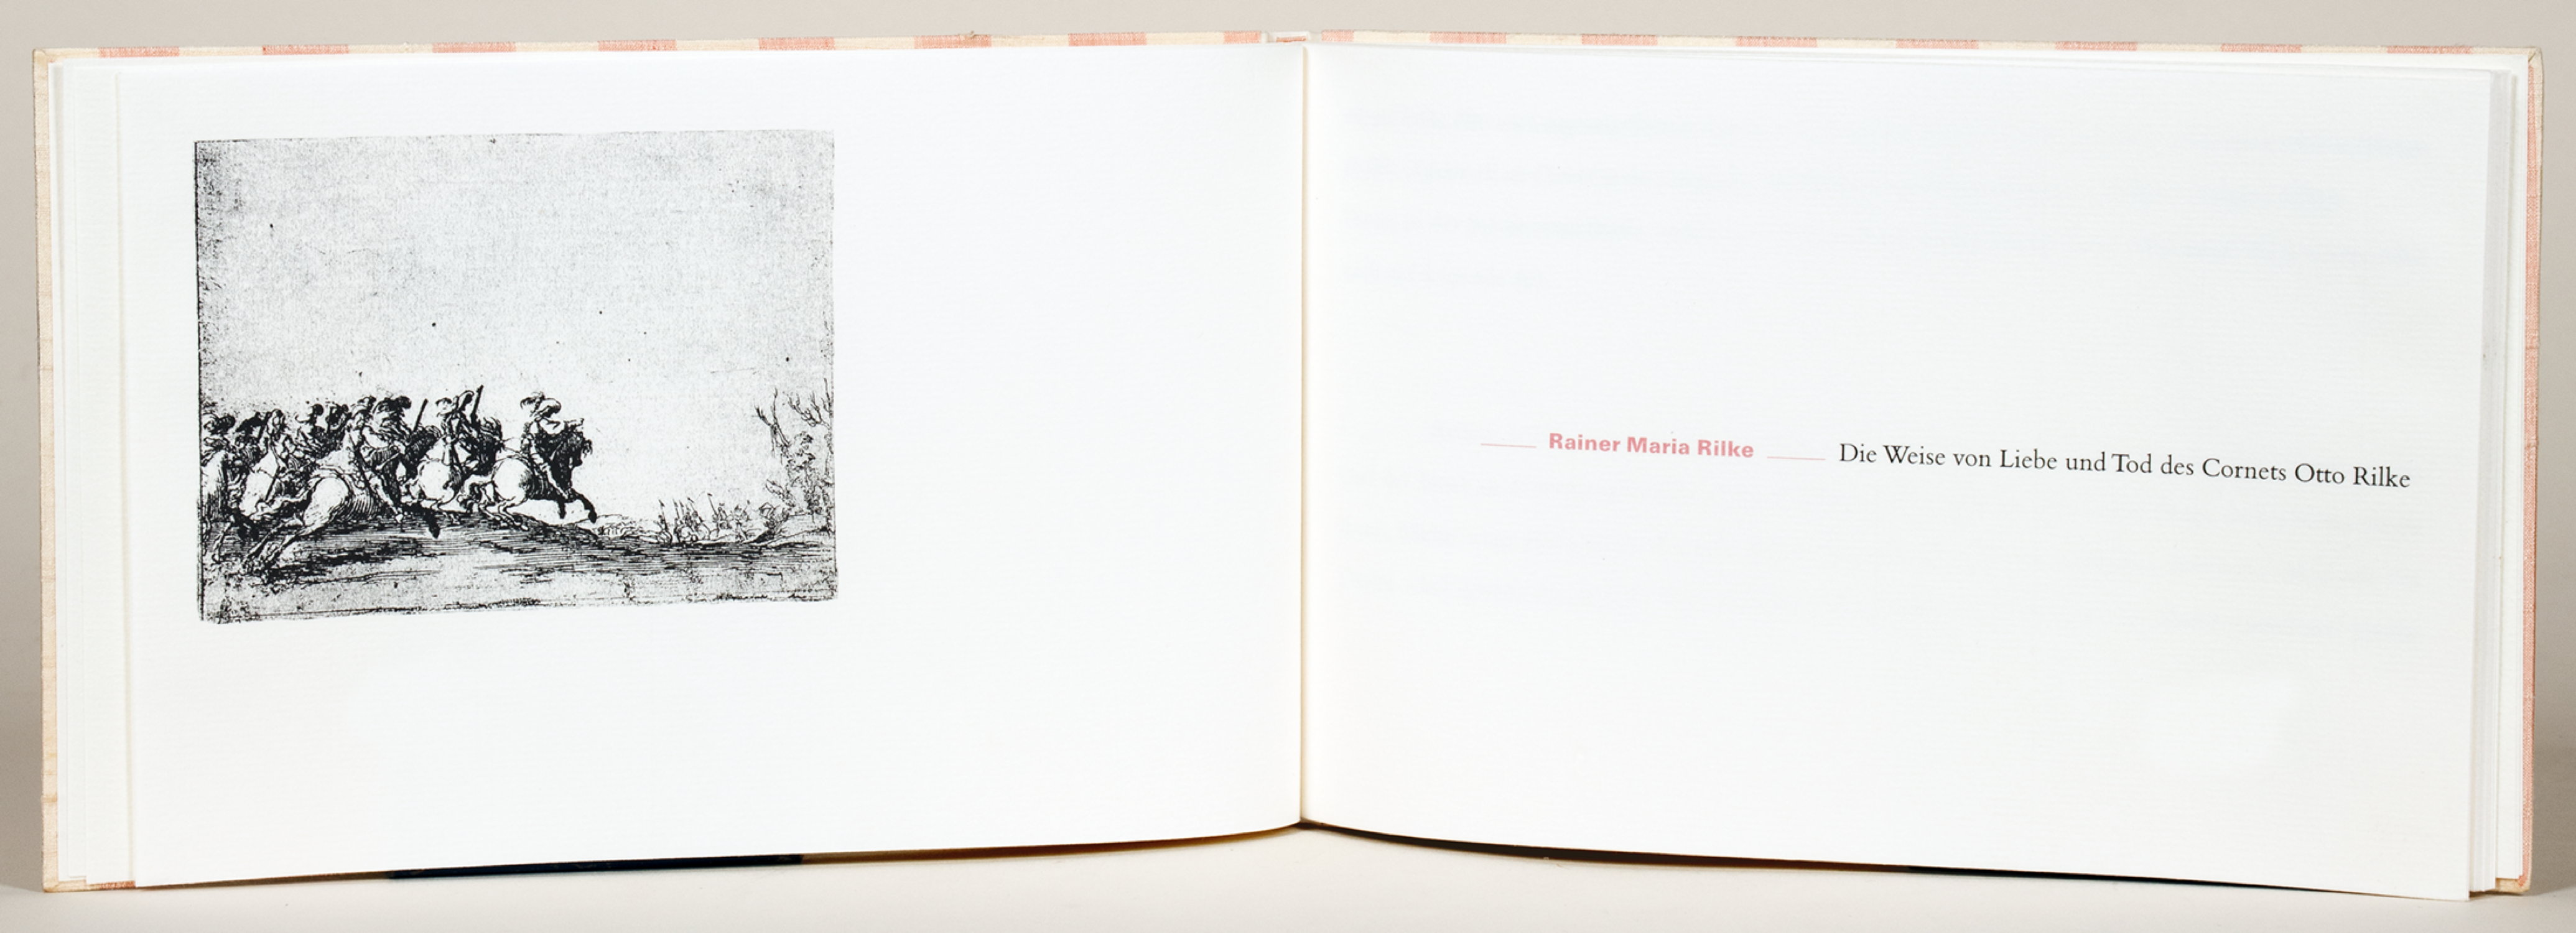 Einbände - Halbpergamentband, Deckel mit zweifarbigem Wildseidenbezug, von Susanne Depping, Münster. - Image 2 of 2